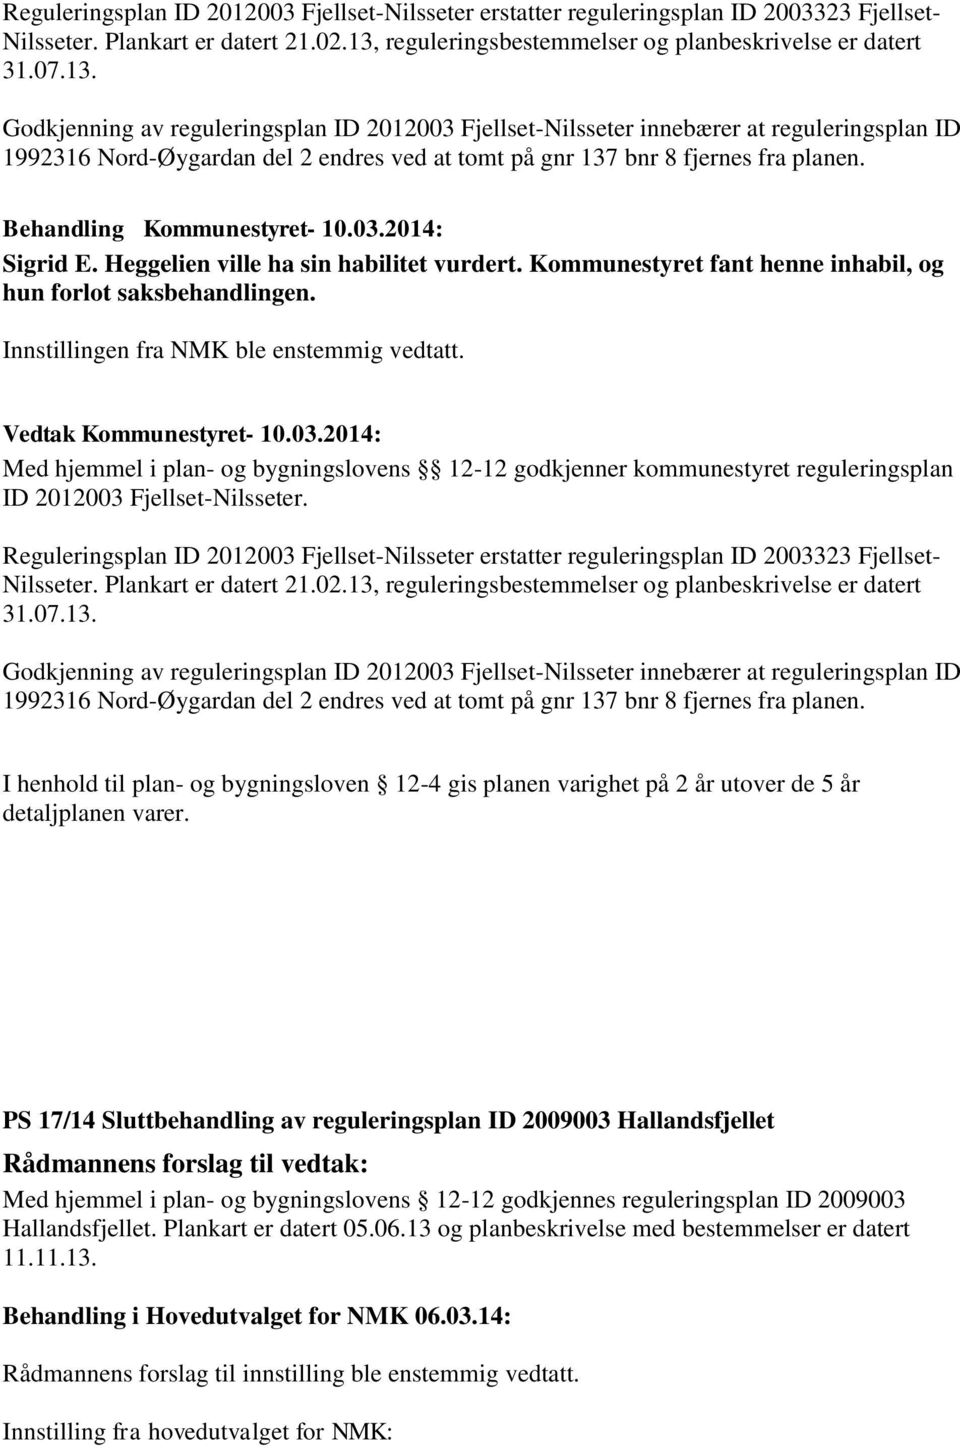 Godkjenning av reguleringsplan ID 2012003 Fjellset-Nilsseter innebærer at reguleringsplan ID 1992316 Nord-Øygardan del 2 endres ved at tomt på gnr 137 bnr 8 fjernes fra planen. Sigrid E.